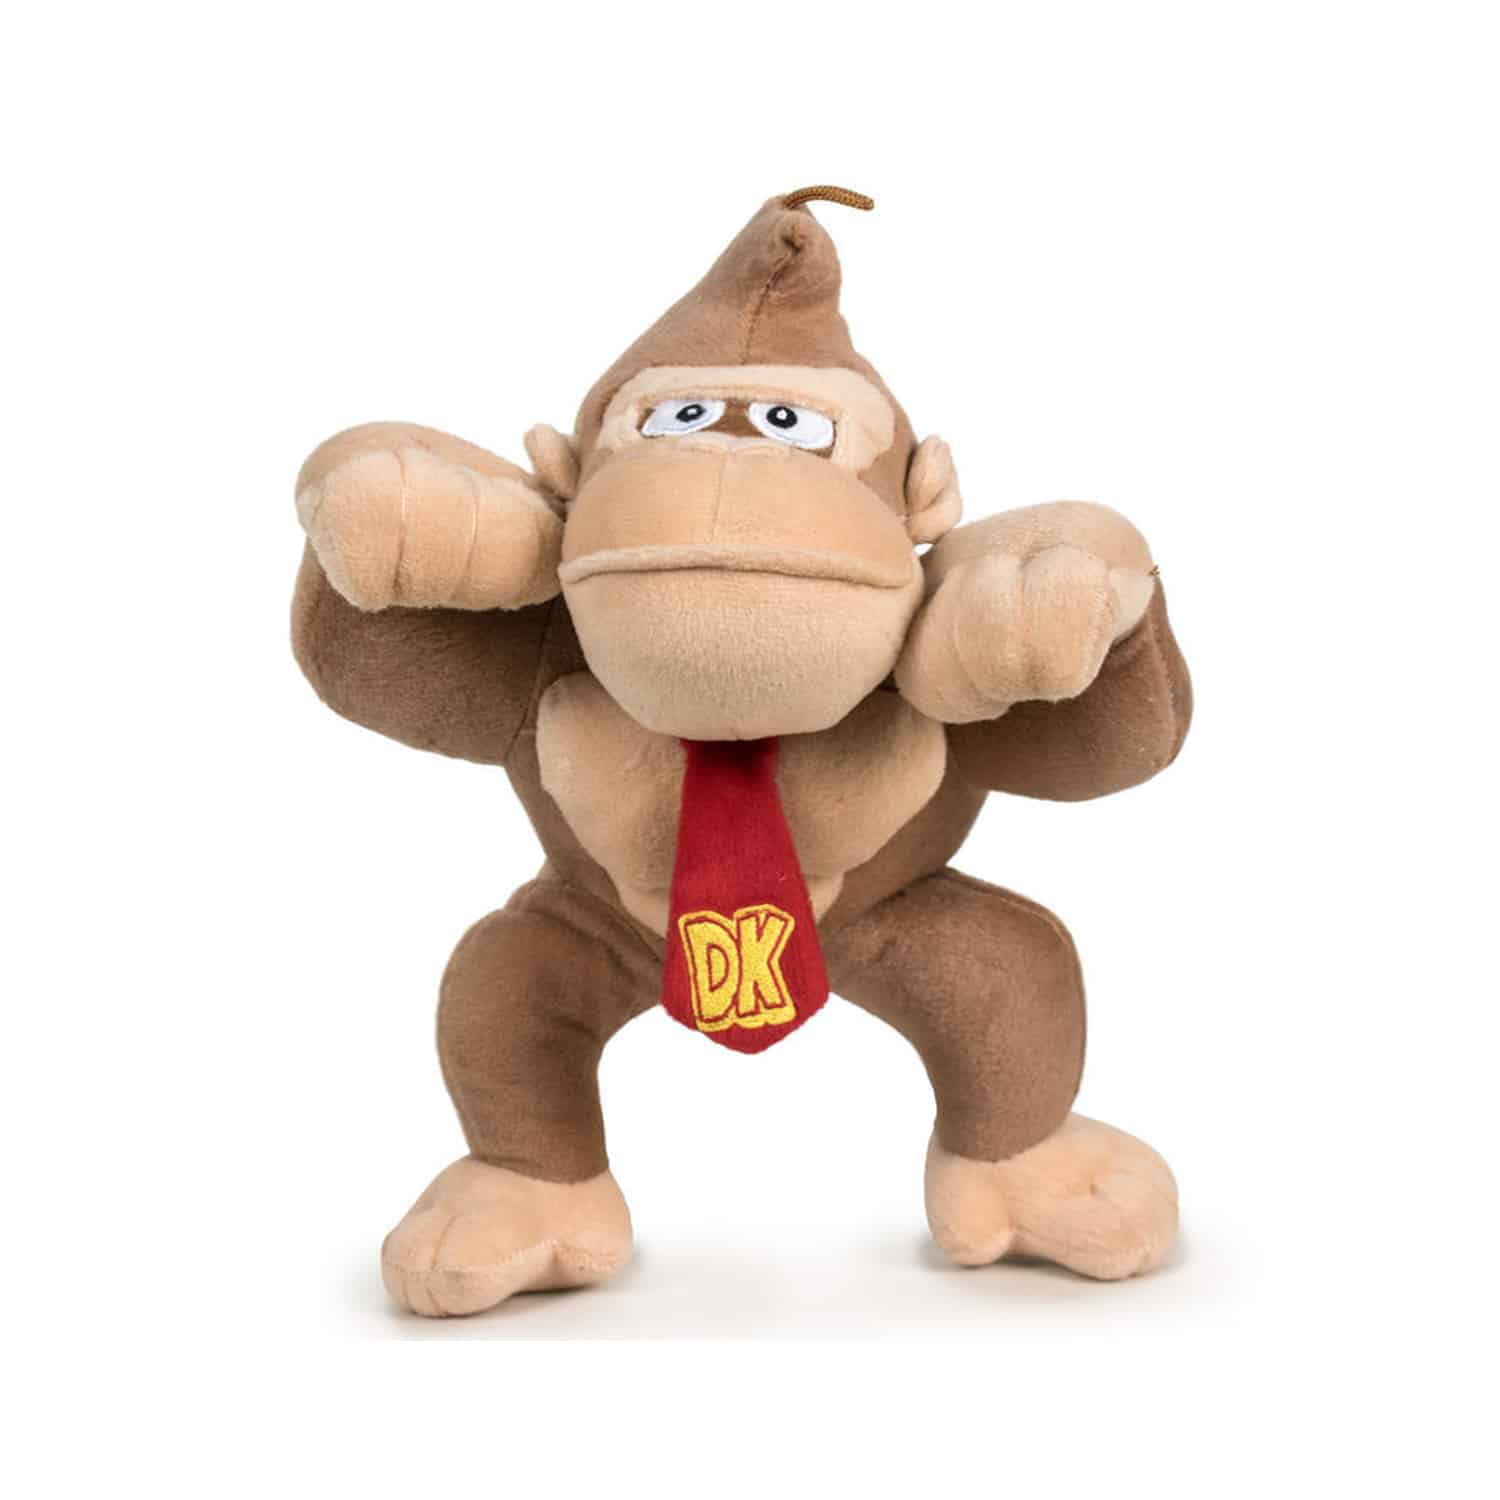 Donkey Kong - Plush Toy (Small)